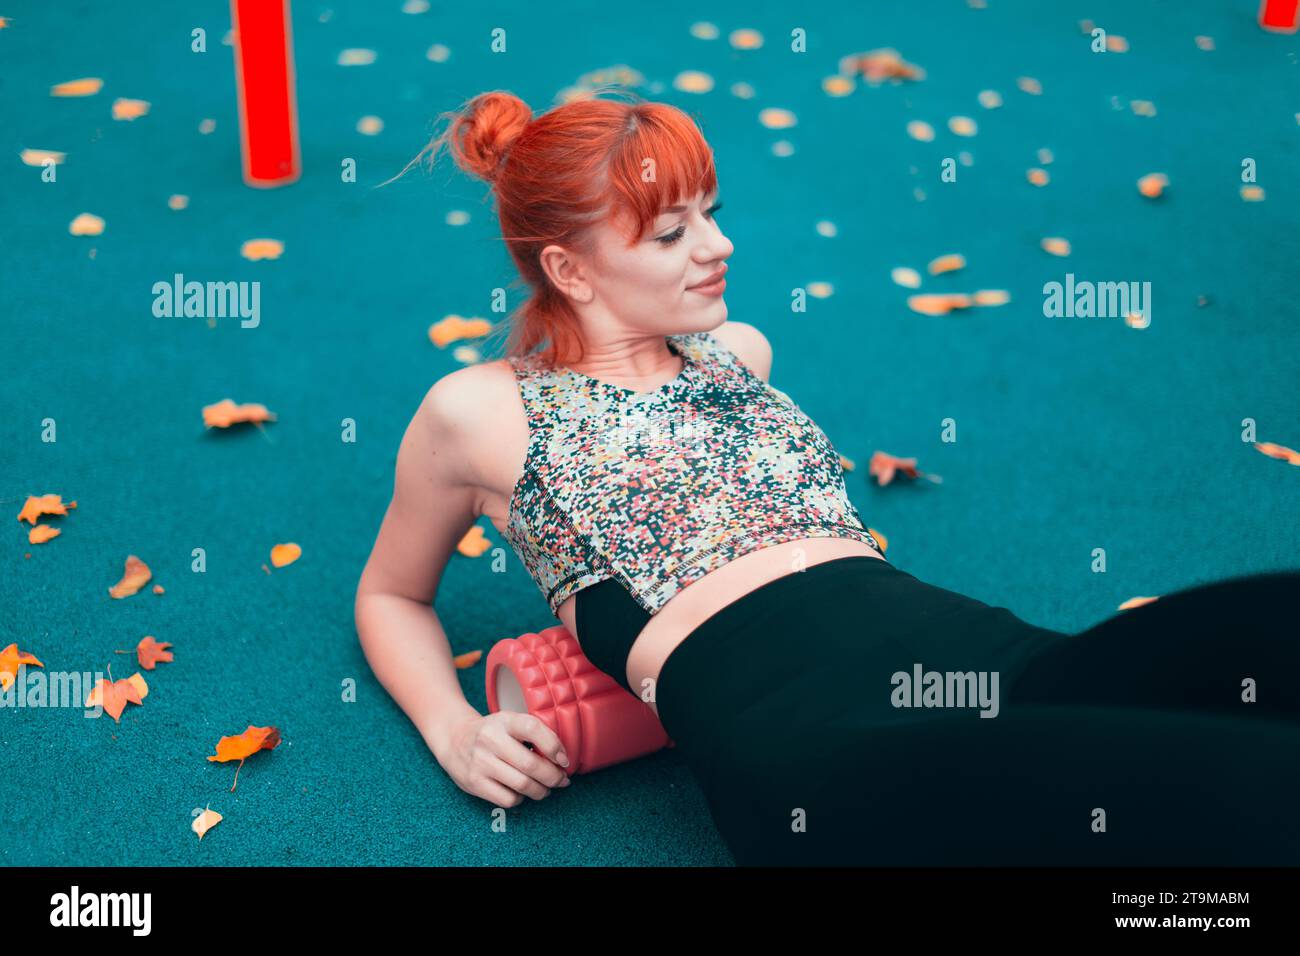 Junge rothaarige Kaukasierin in Sportswear, die sich mit einem Schaumstoffroller aufwärmt, bevor sie im Herbst im Park trainieren Stockfoto